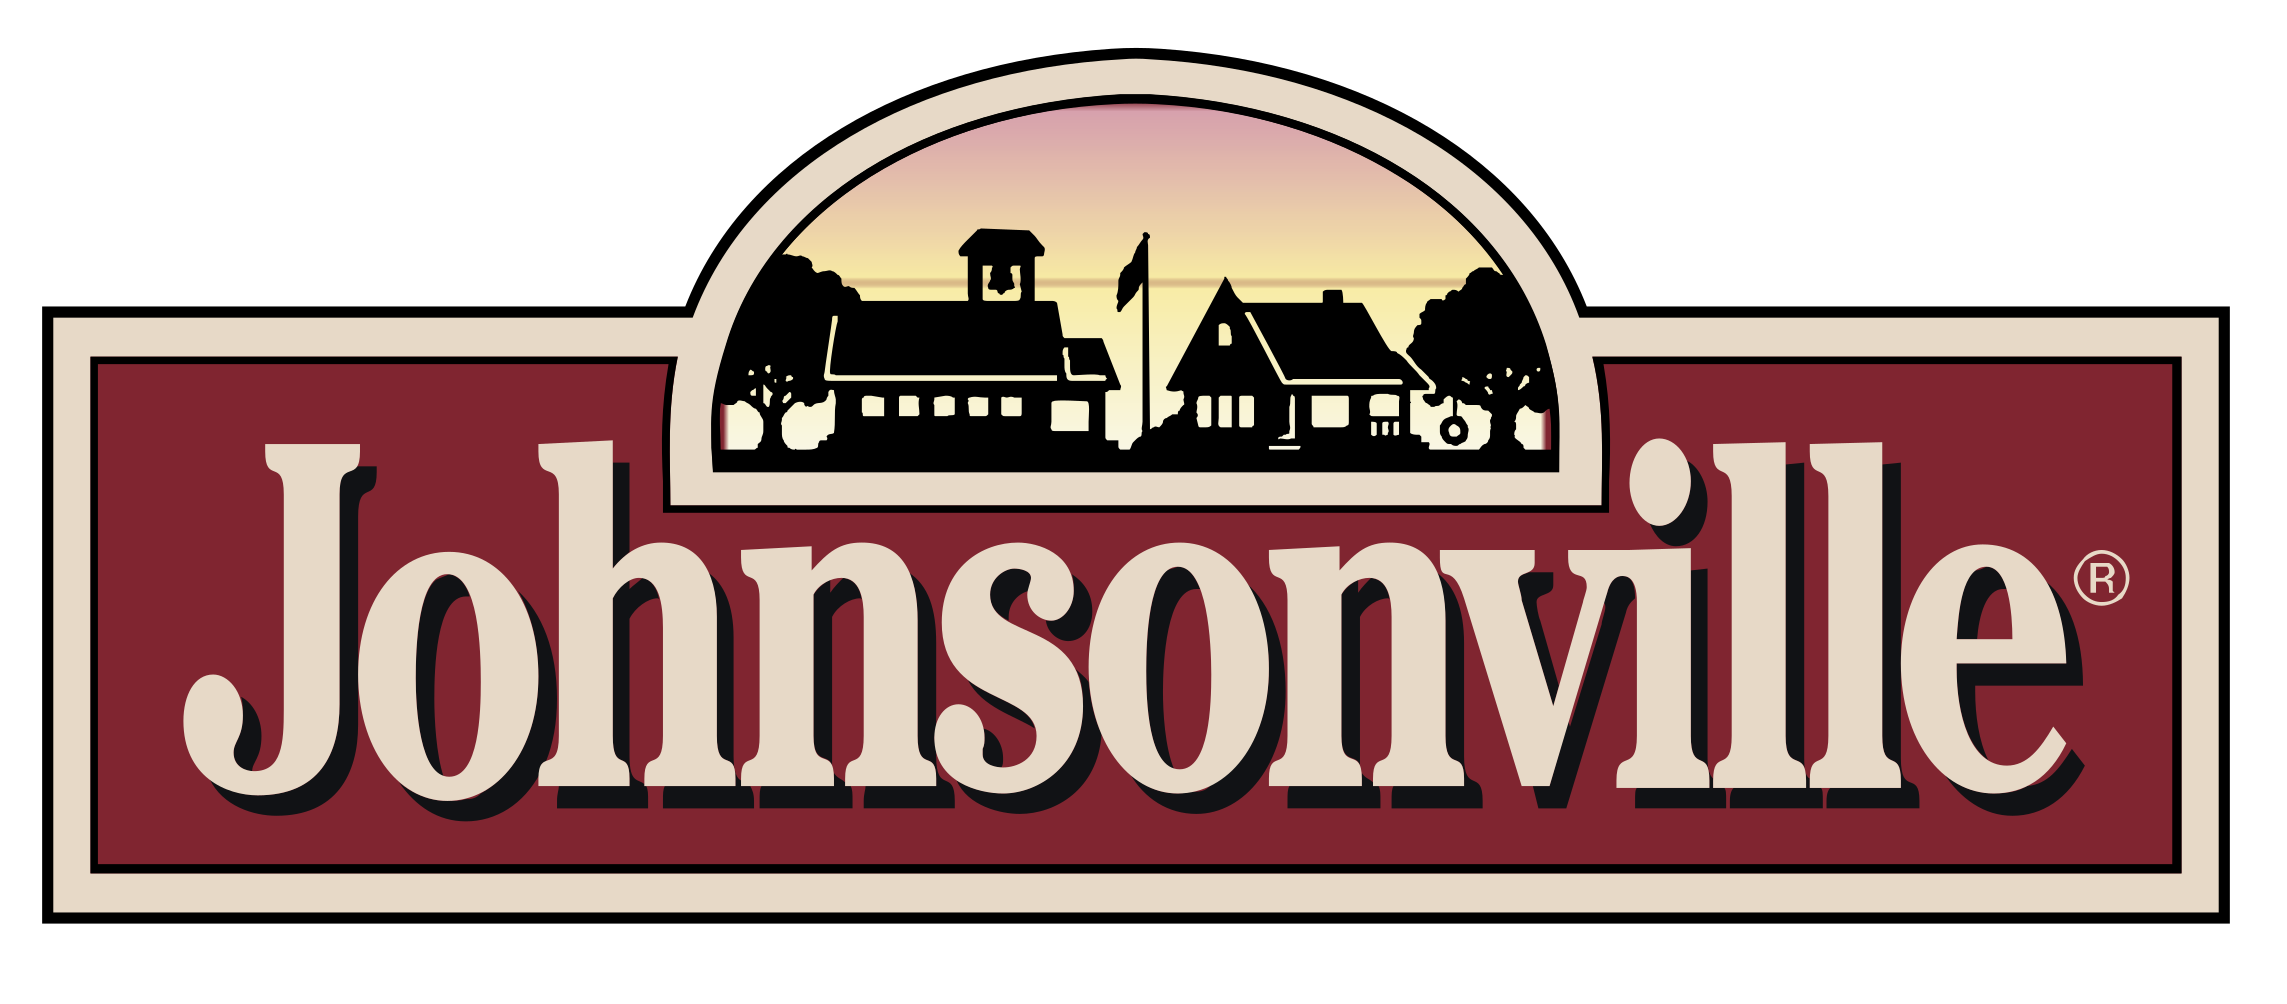 Johnsonville logo.